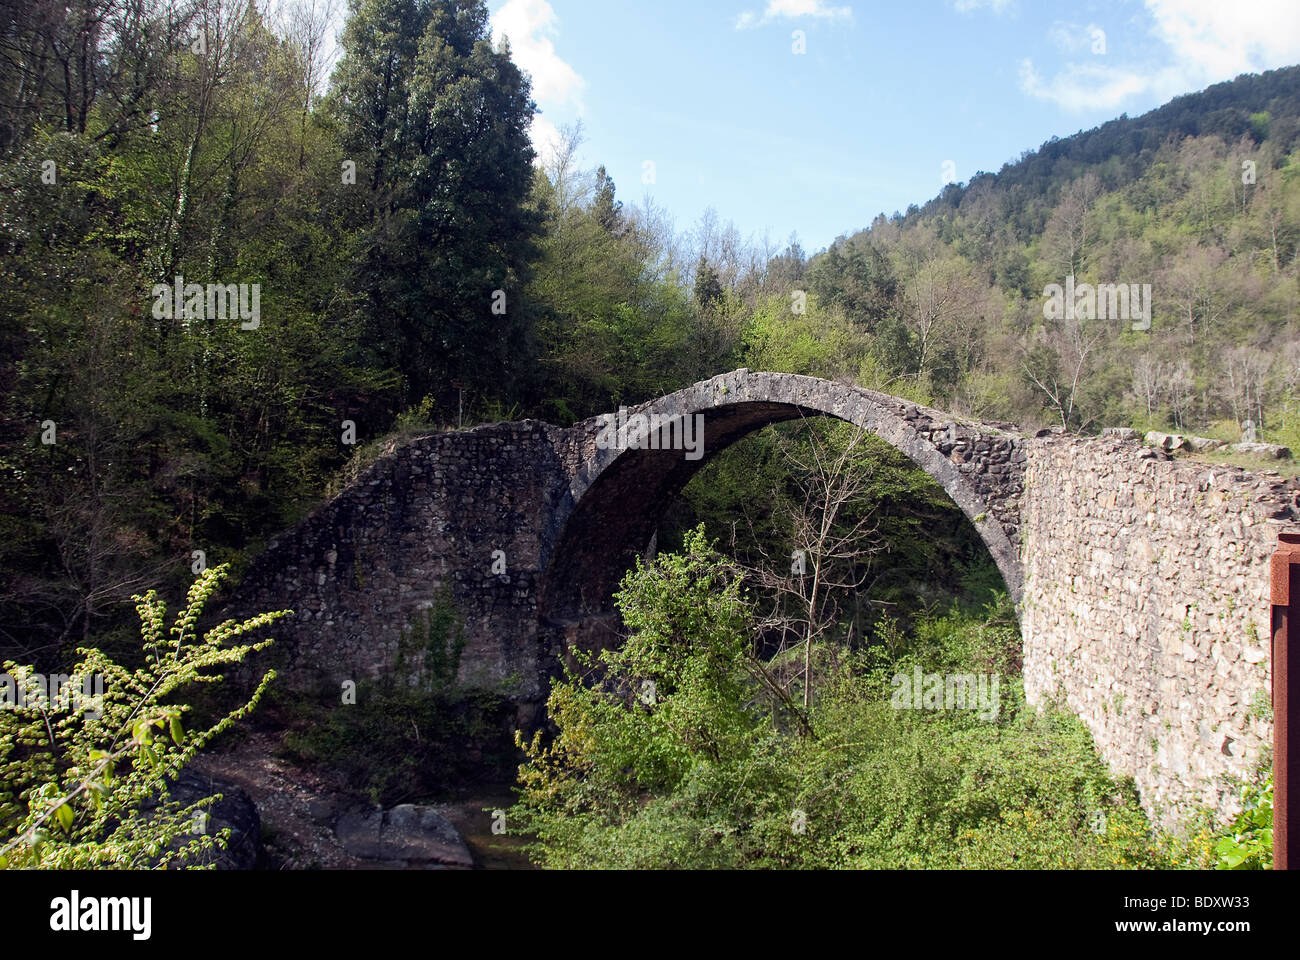 Pont de pierre médiéval à travée unique dans le Val di Merse, près de Sienne, Italie Banque D'Images